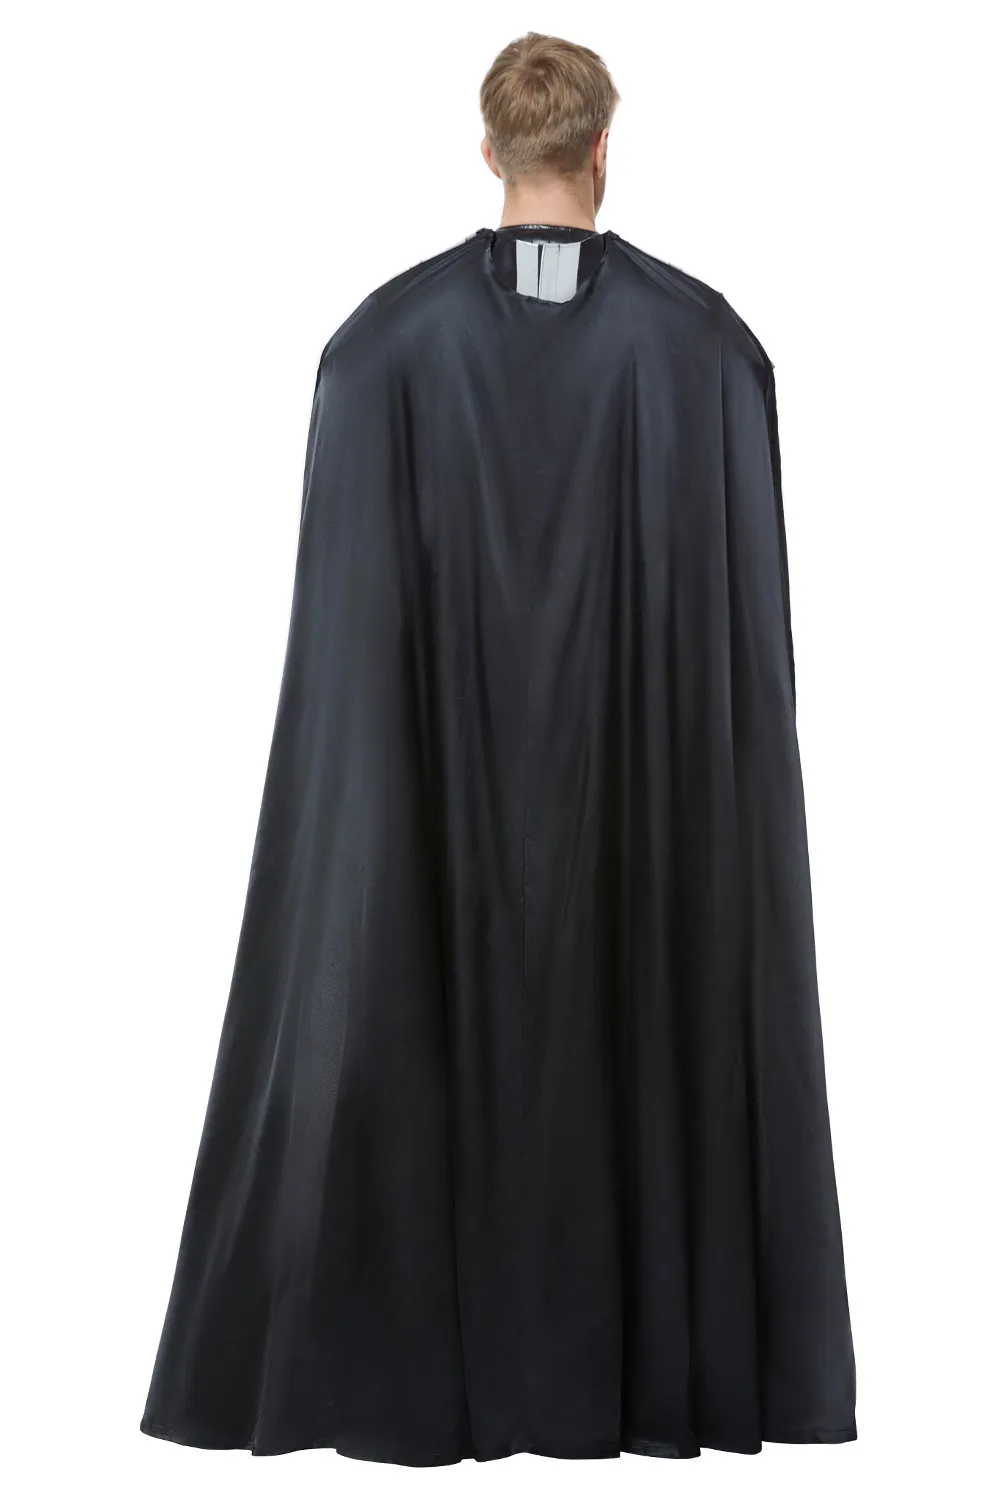 Darth Cos Vader Cosplay Anime Costume tuta gilet mantello uniforme nera Fantasia uomo ragazzi Halloween Carnival Party travestimento vestito